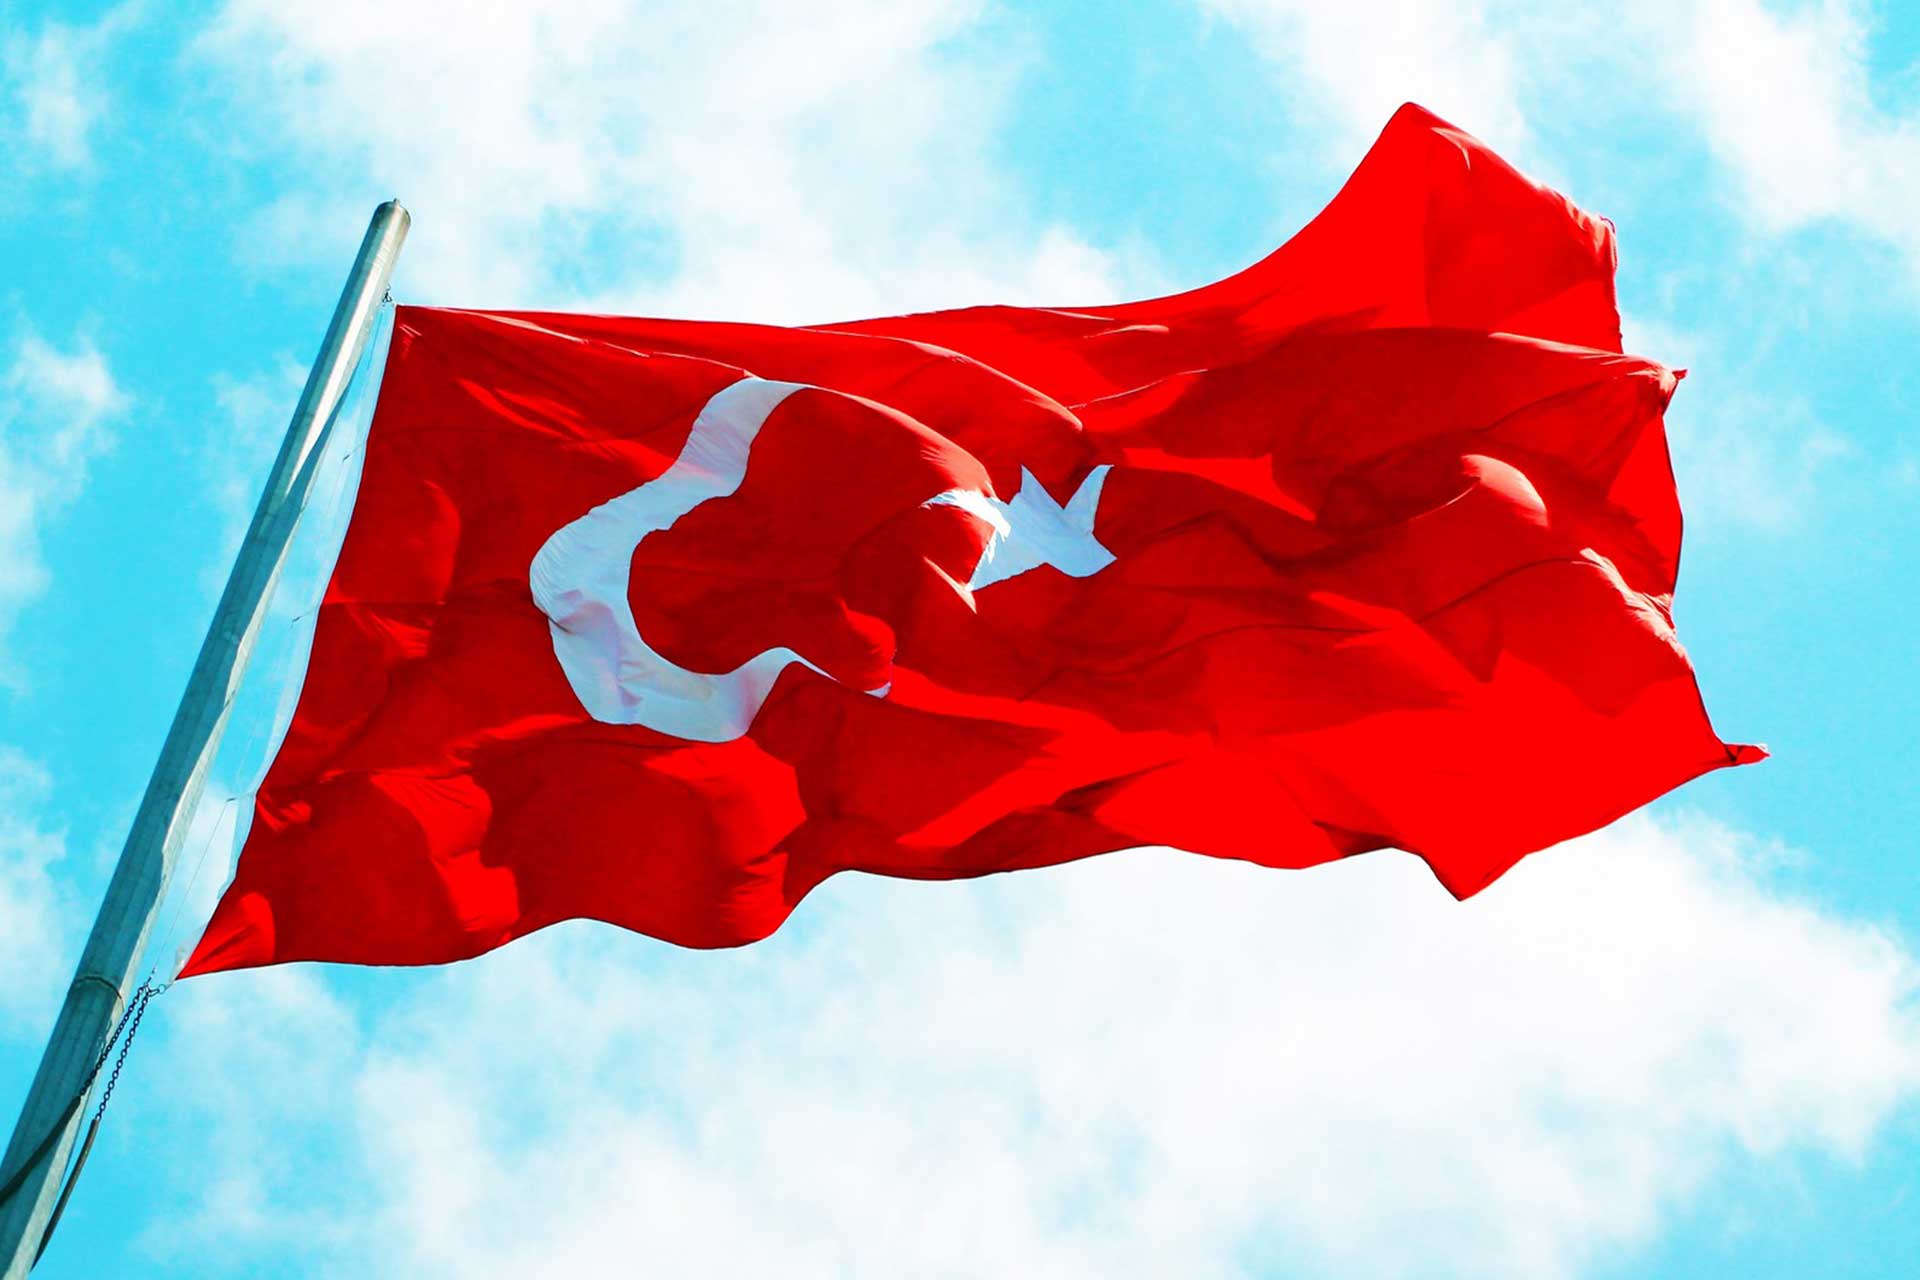 turk bayragi resimleri 2019 12